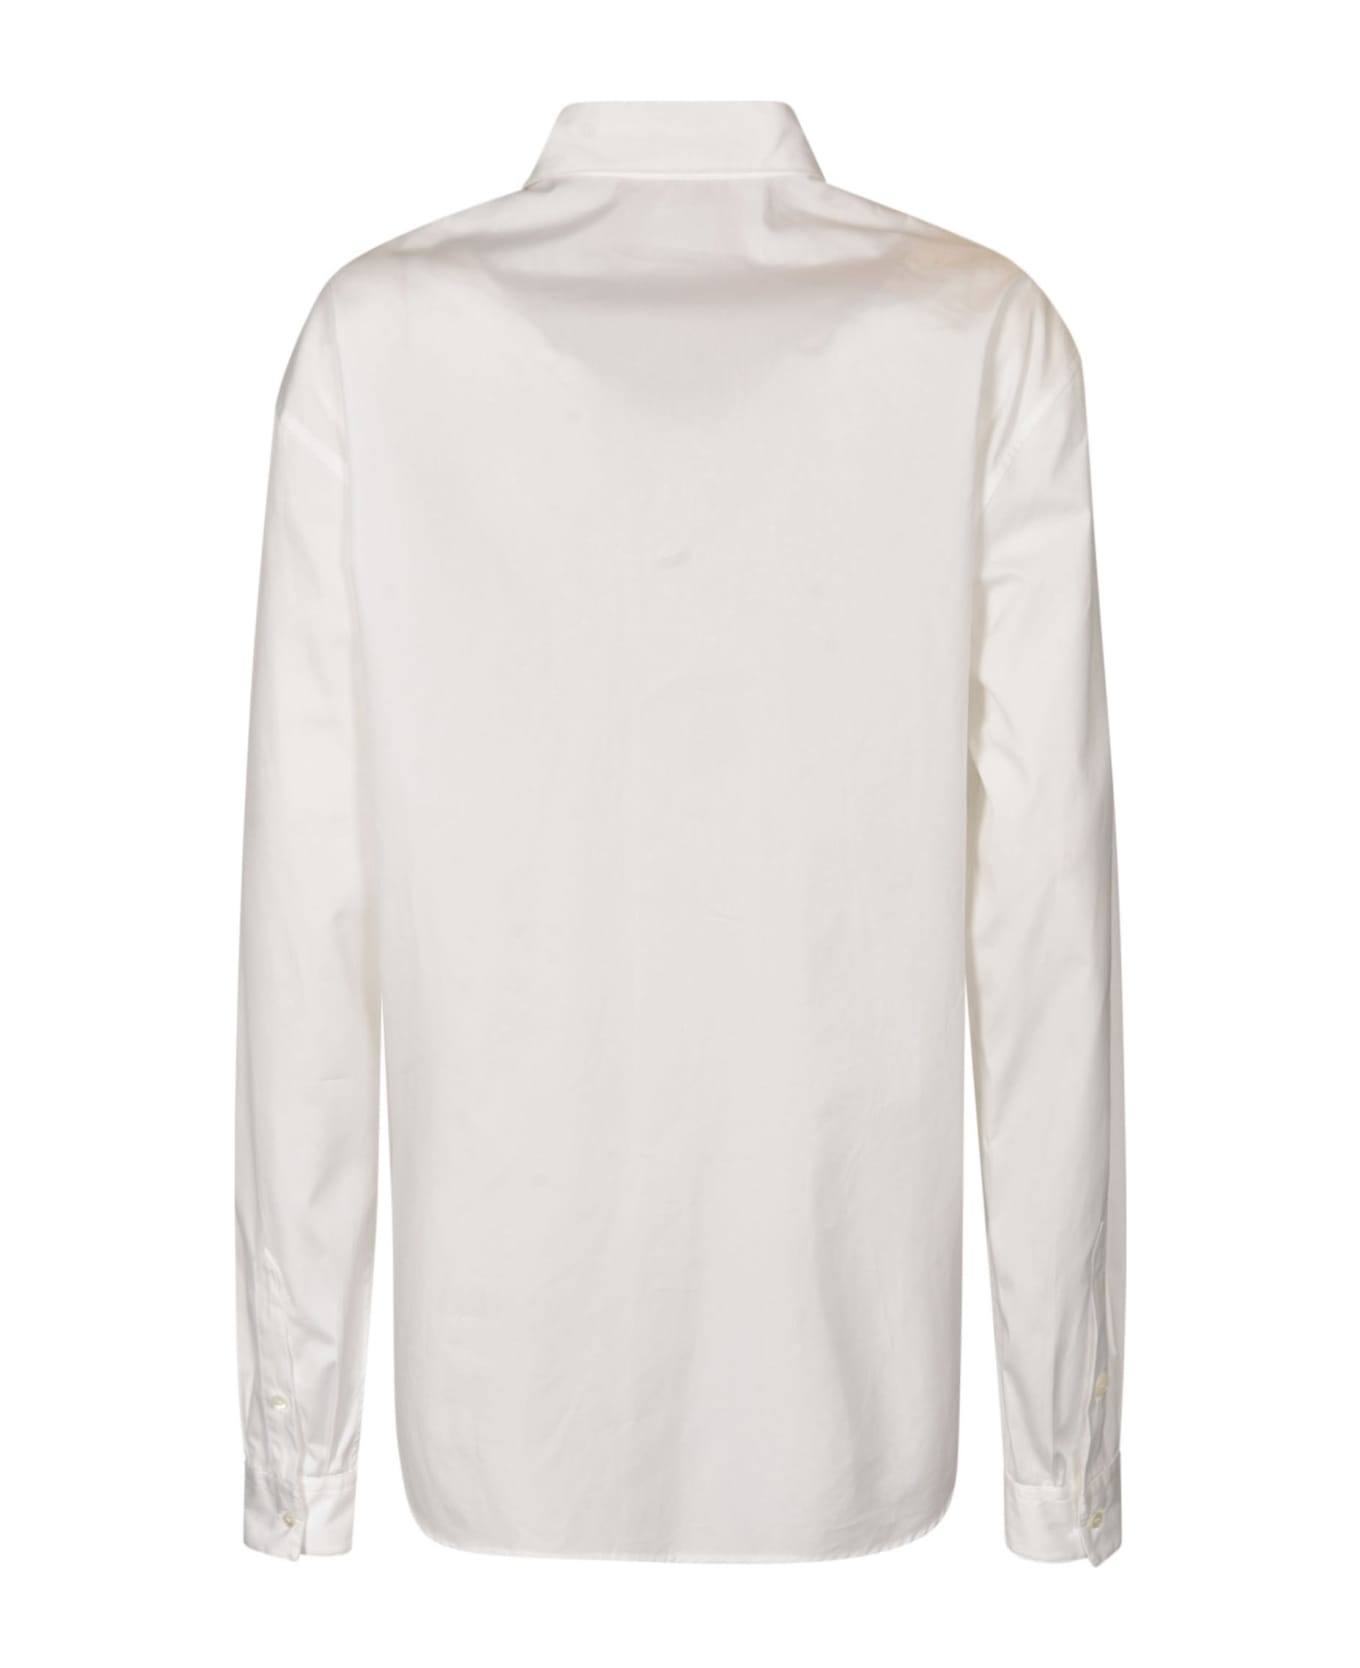 N.21 Long-sleeved Shirt - White